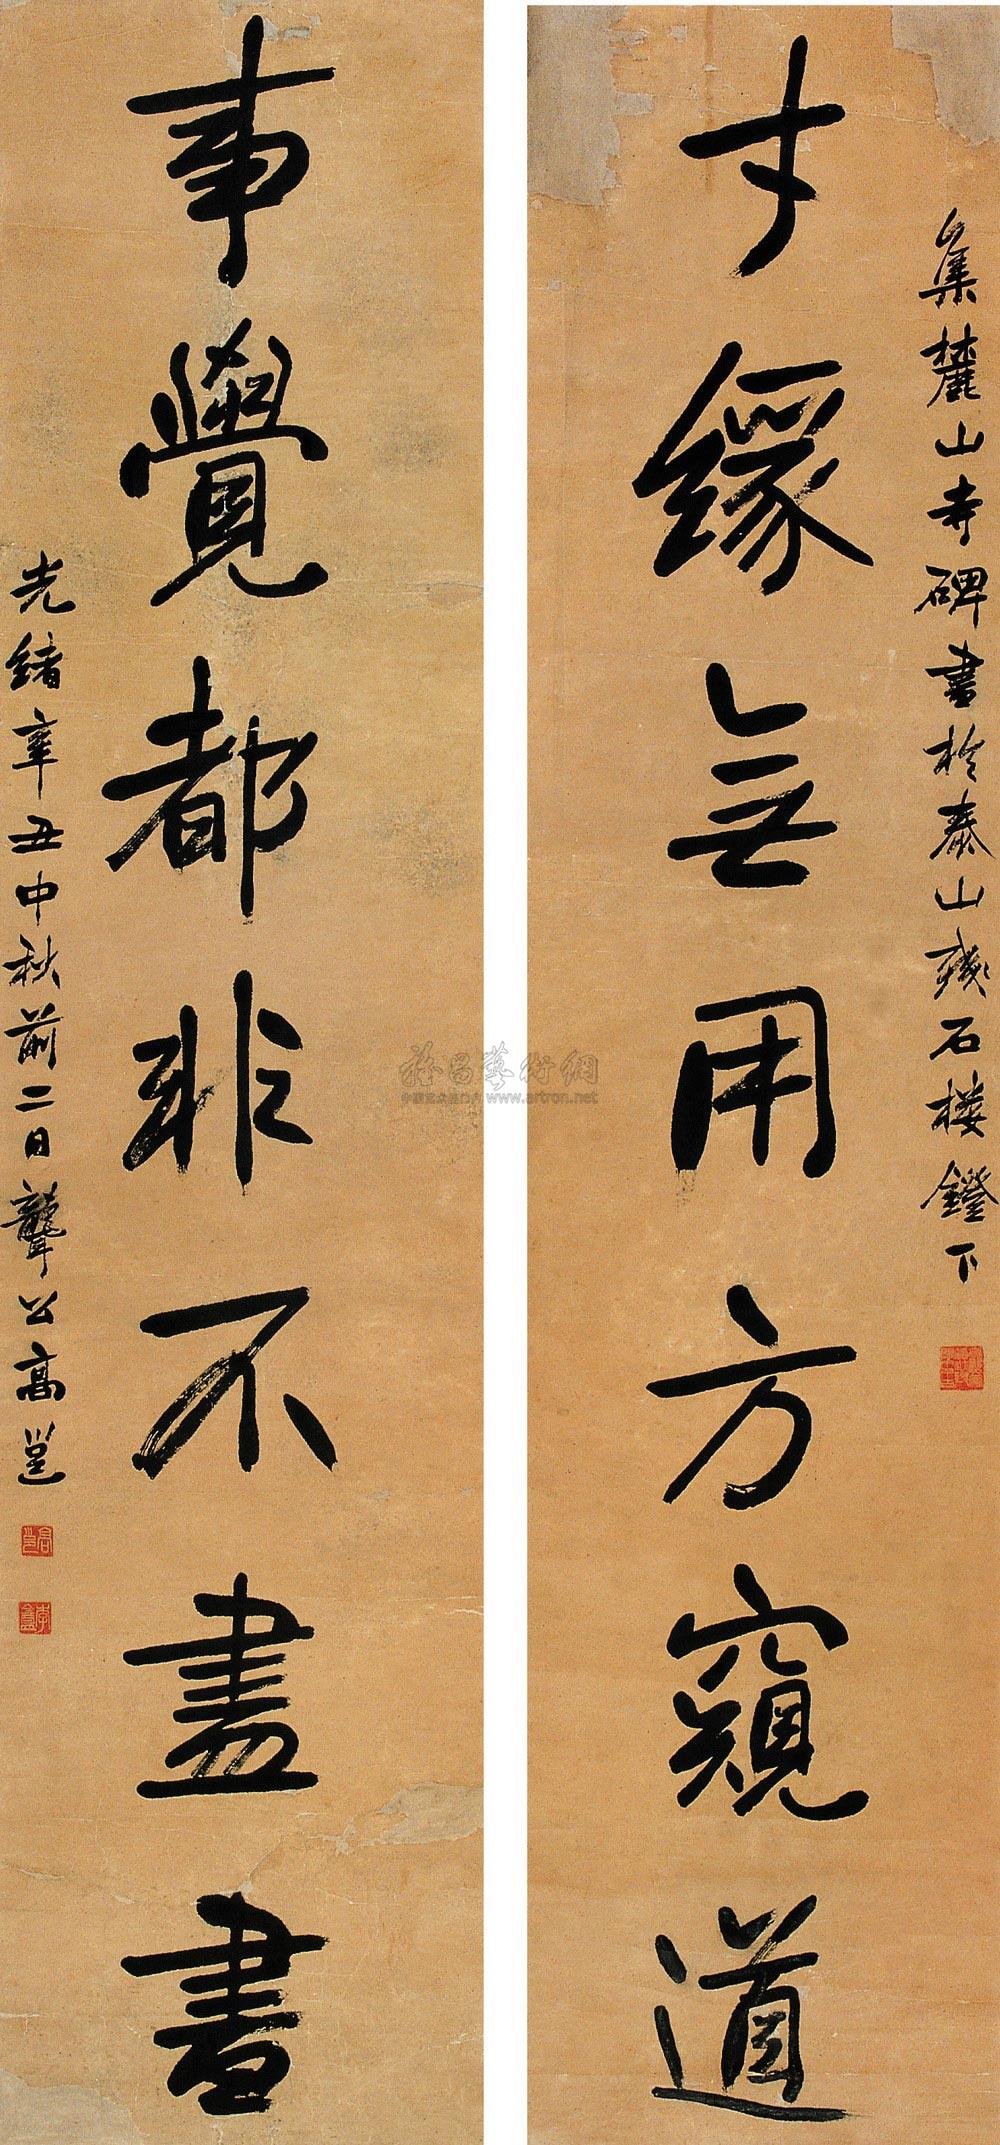 0302 辛丑(1901年)作 书法七言联 屏轴 水墨纸本